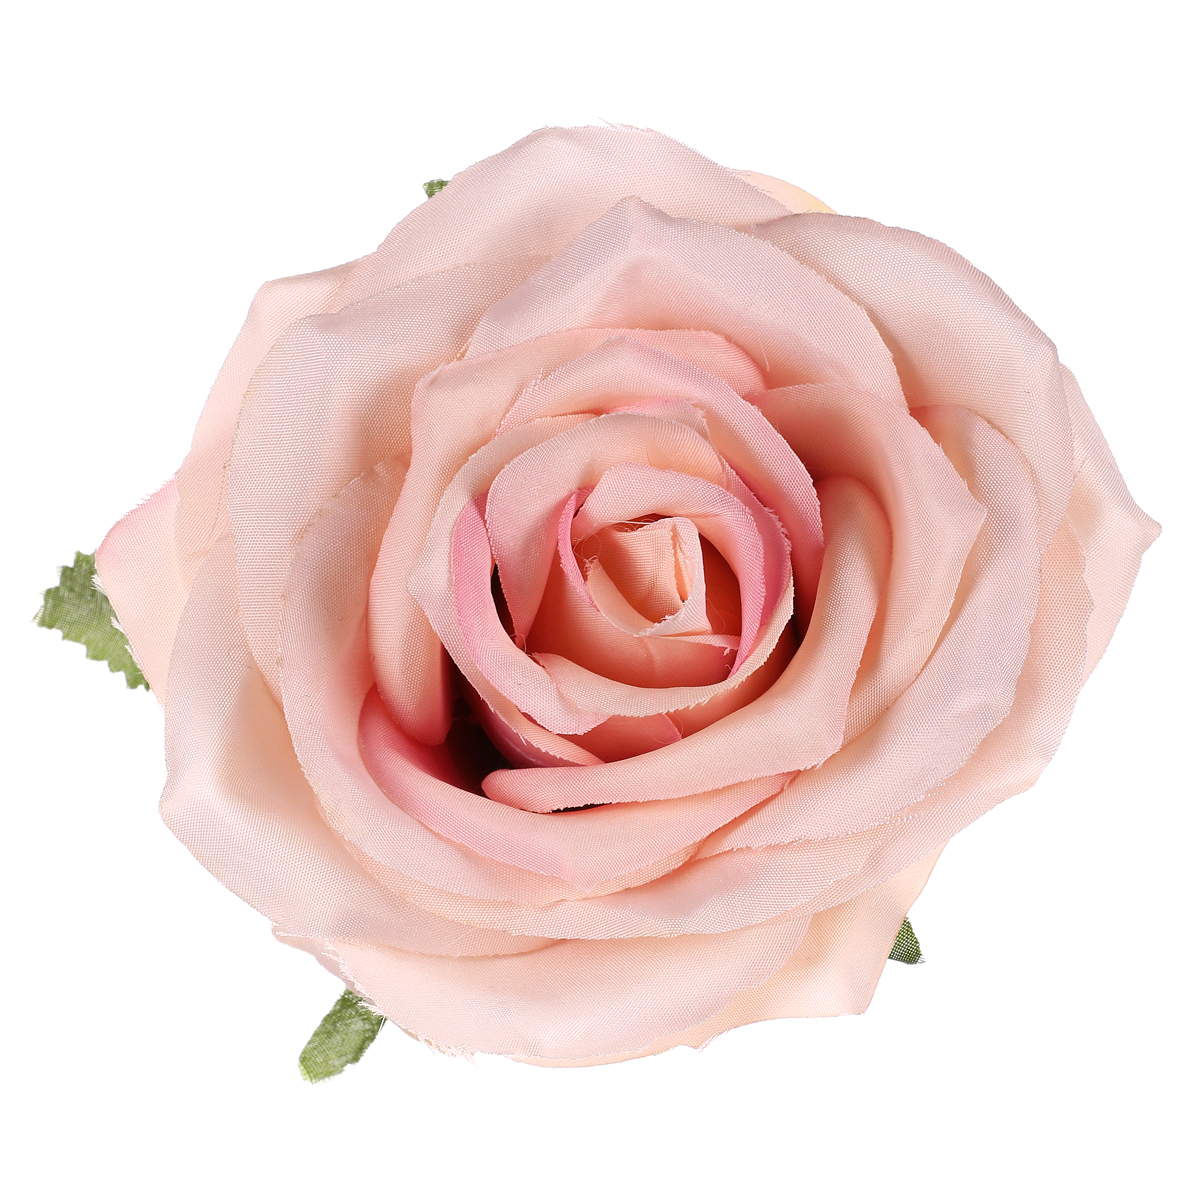 Růže, barva staro-růžová. Květina umělá vazbová. Cena za balení 12 ks